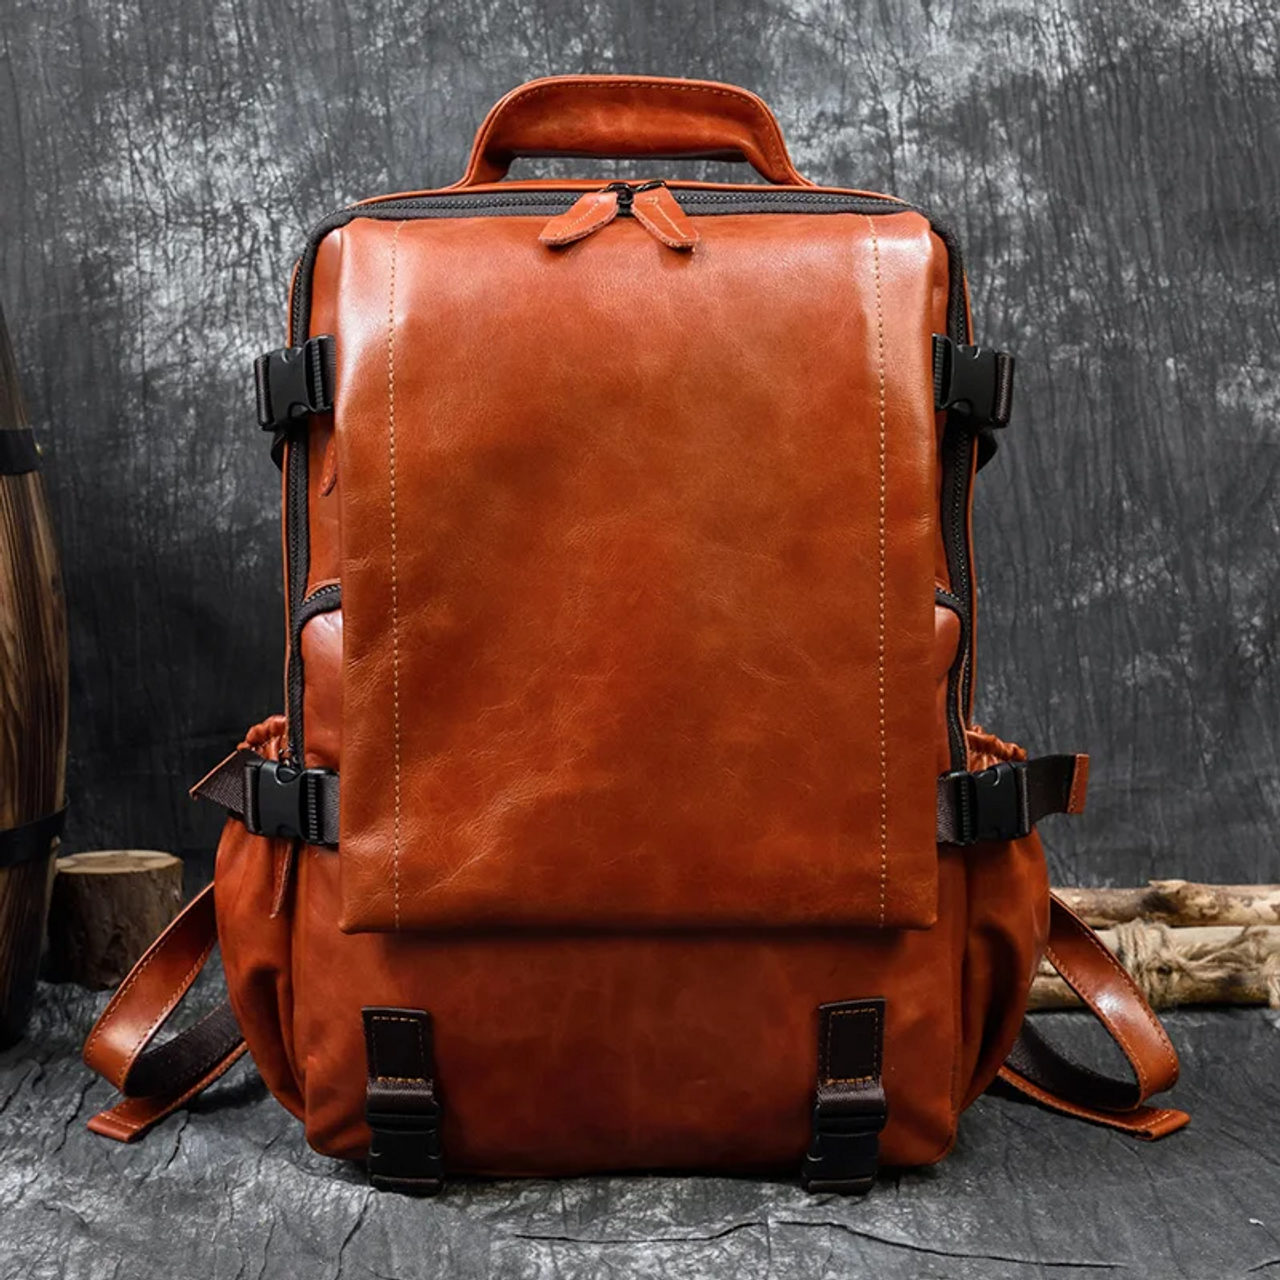 Large Capacity Orange Leather Laptop Backpack